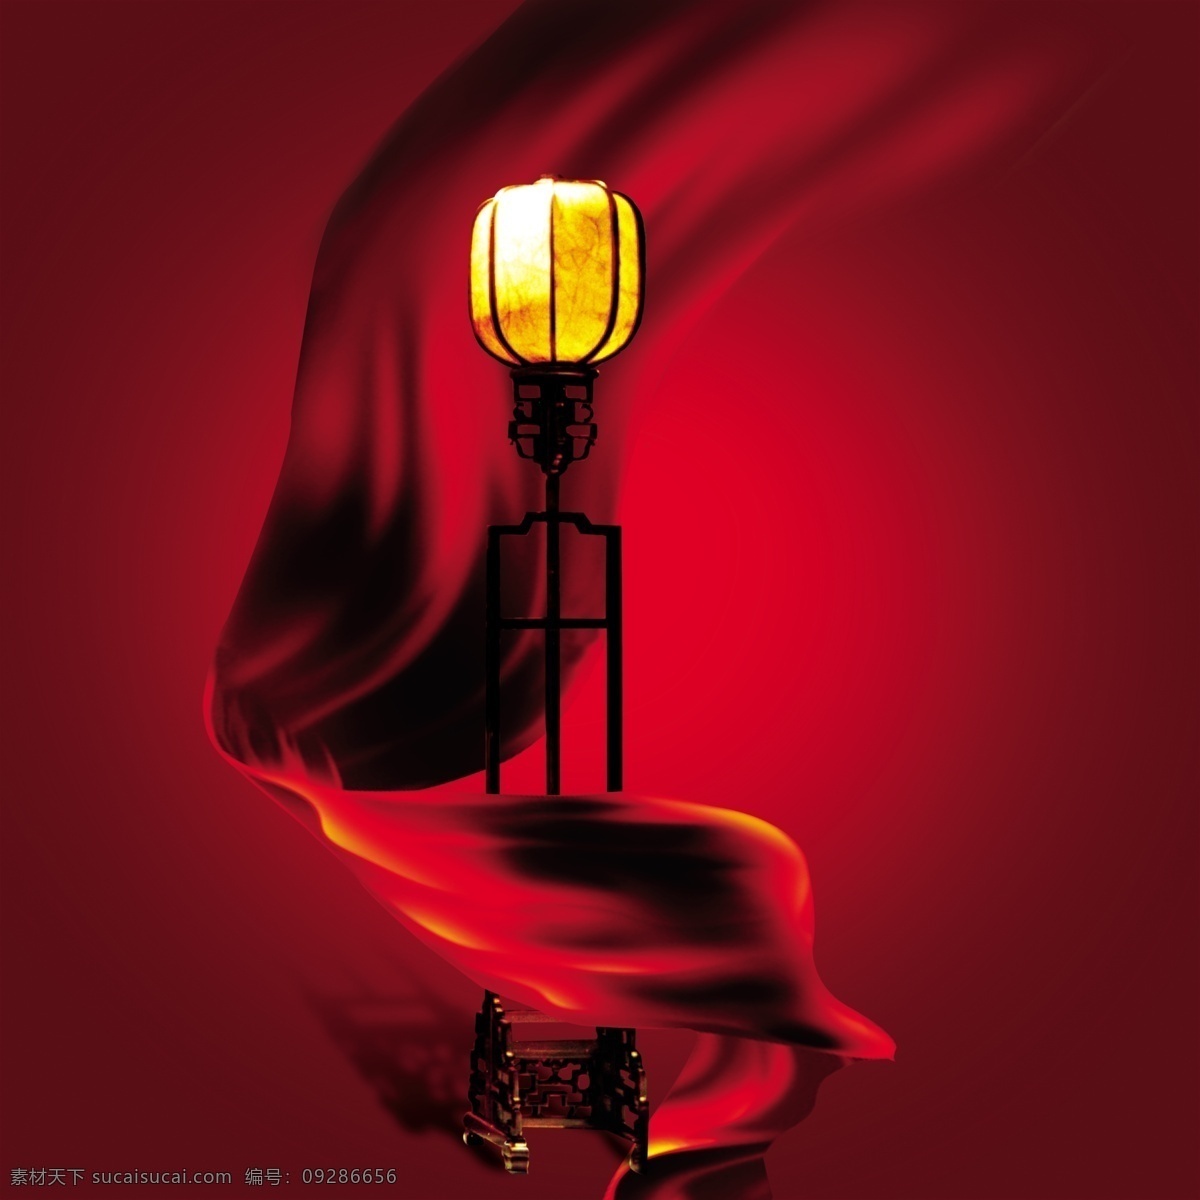 古典家具 设计素材 宫灯 古典 红绸缎 家具 台灯 红色调 psd源文件